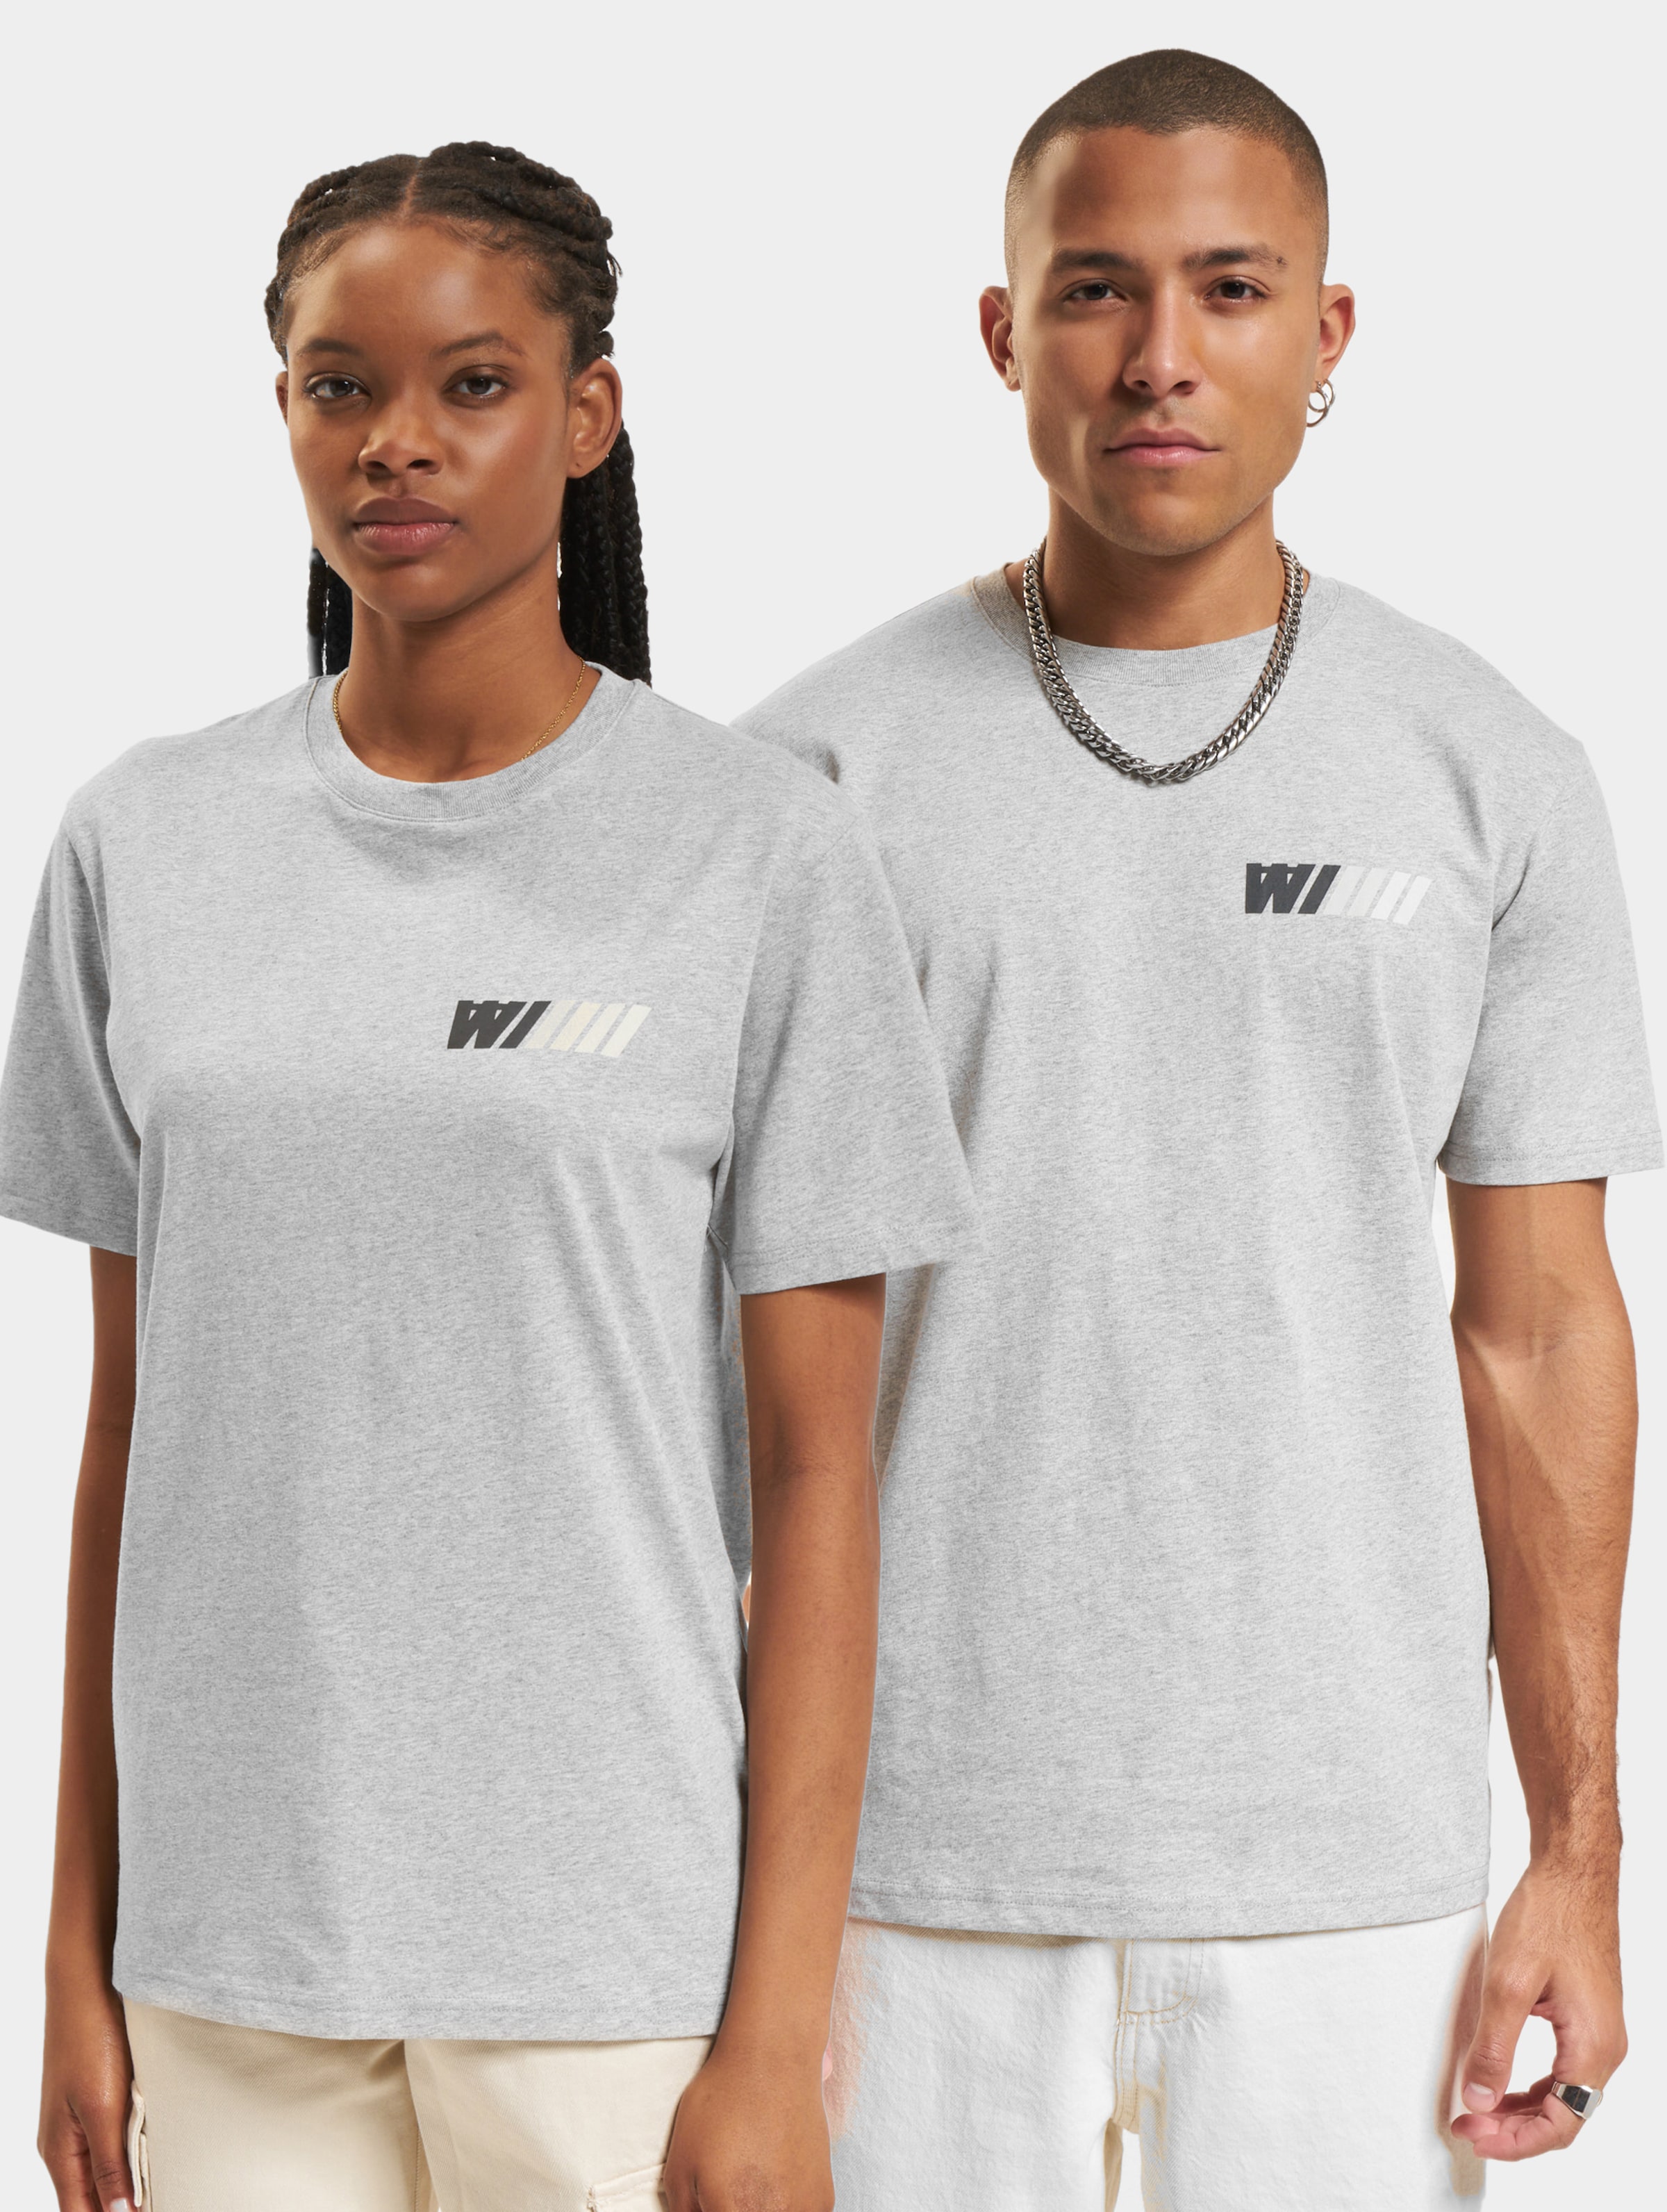 Wood Ace Dealership T-Shirt Frauen,Männer,Unisex op kleur grijs, Maat XXL